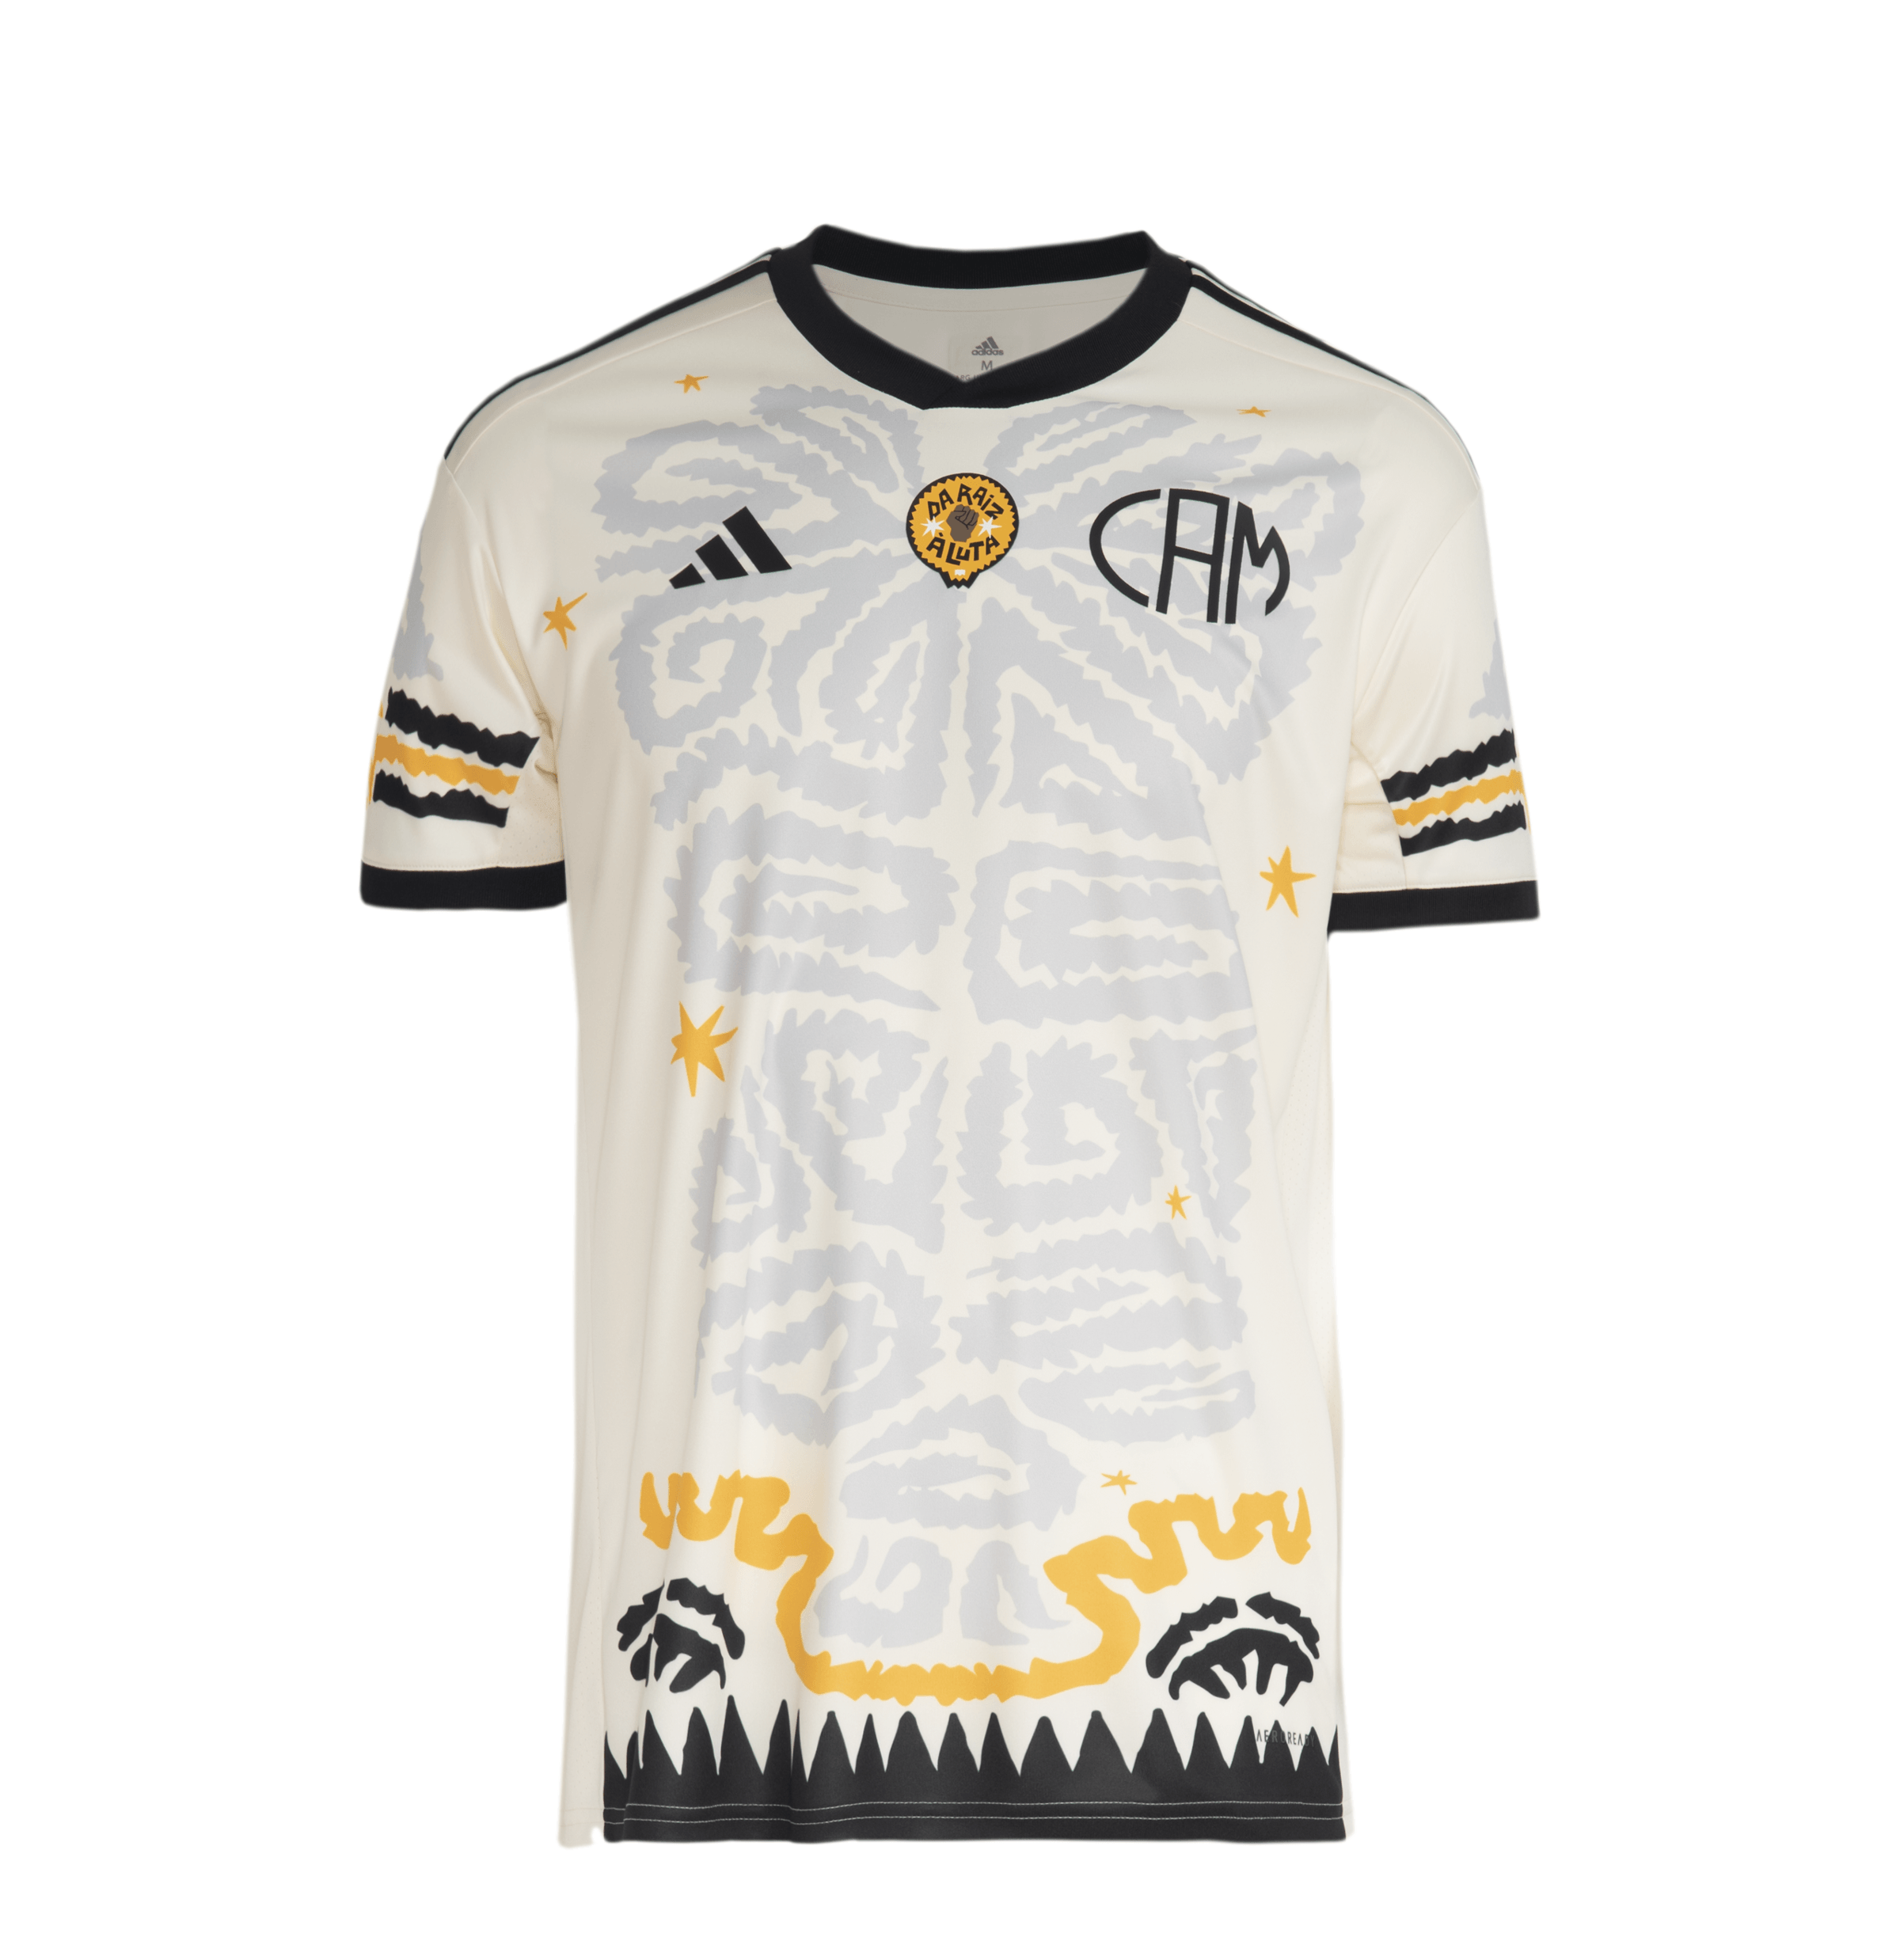 Camisa Lendas do Galo – Branca 2 – Preparada para o Jogo Lendas do Galo  (16/07/2023) – Autografada pelos Ídolos do Clube – Play For a Cause